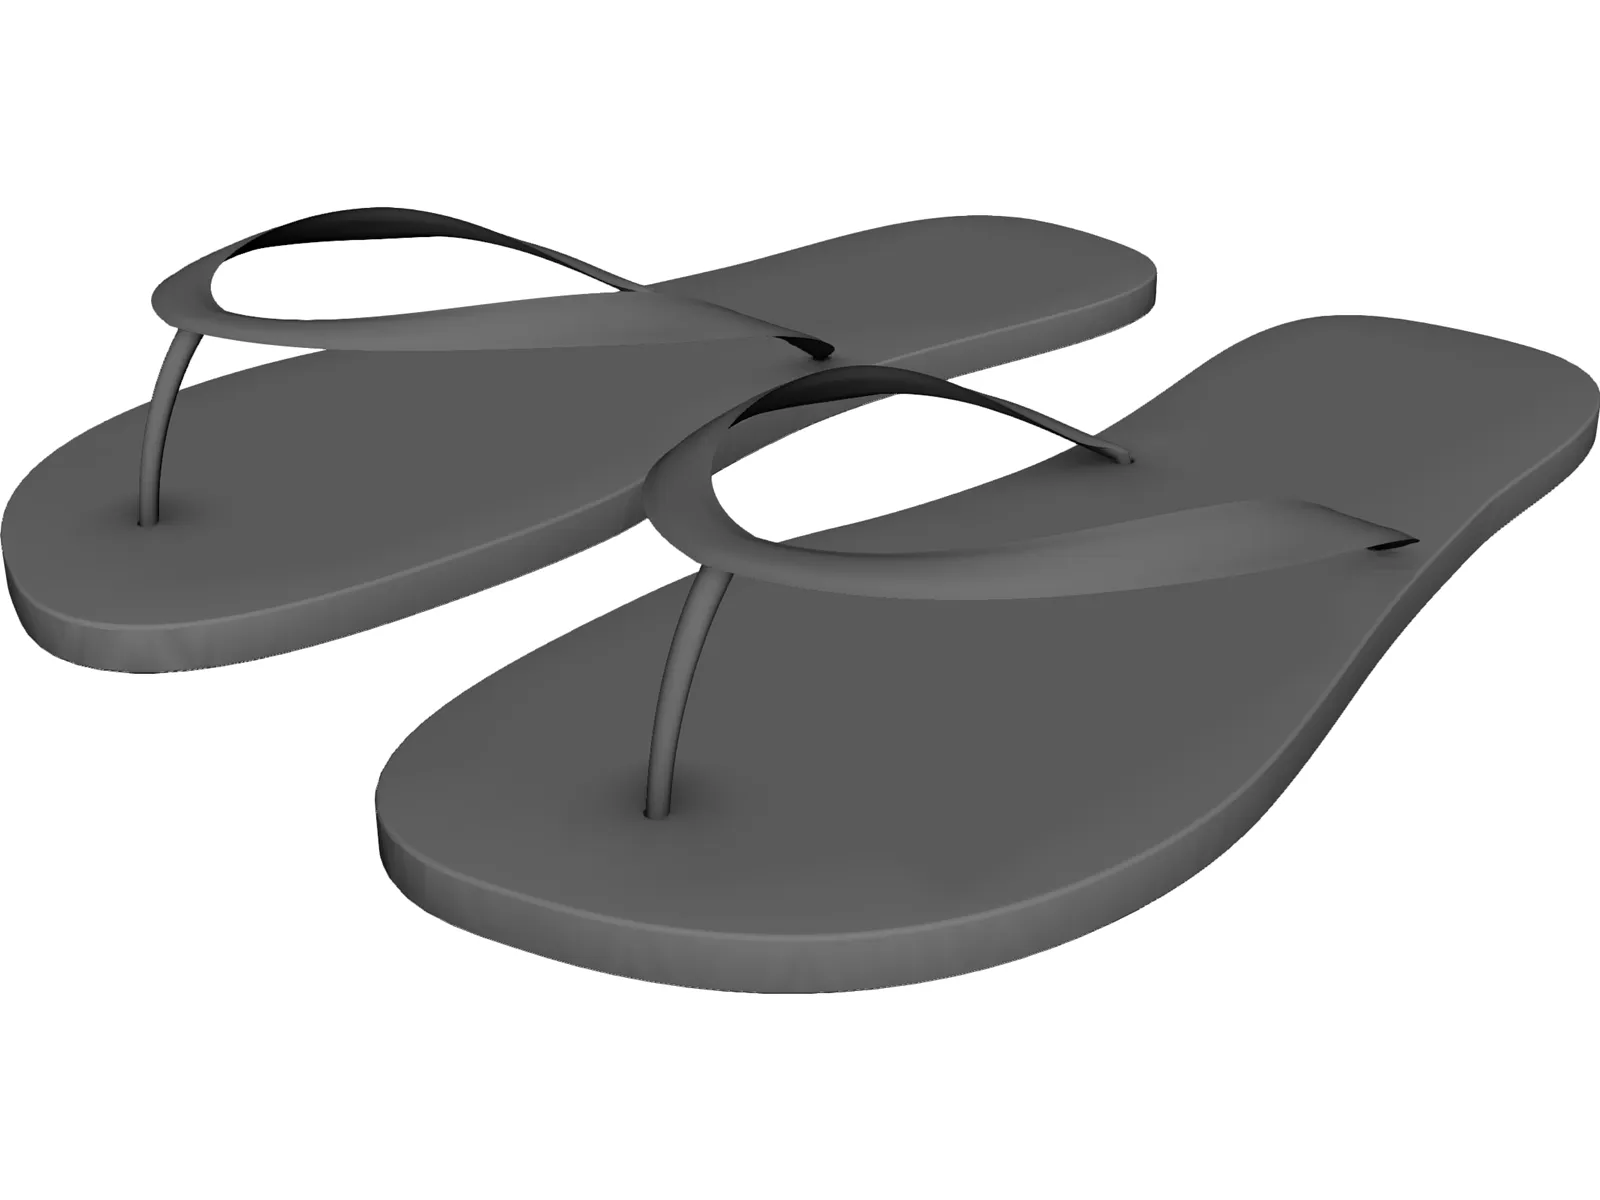 AutoCAD 3D Slipper Tutorial | Mesh Modeling - YouTube